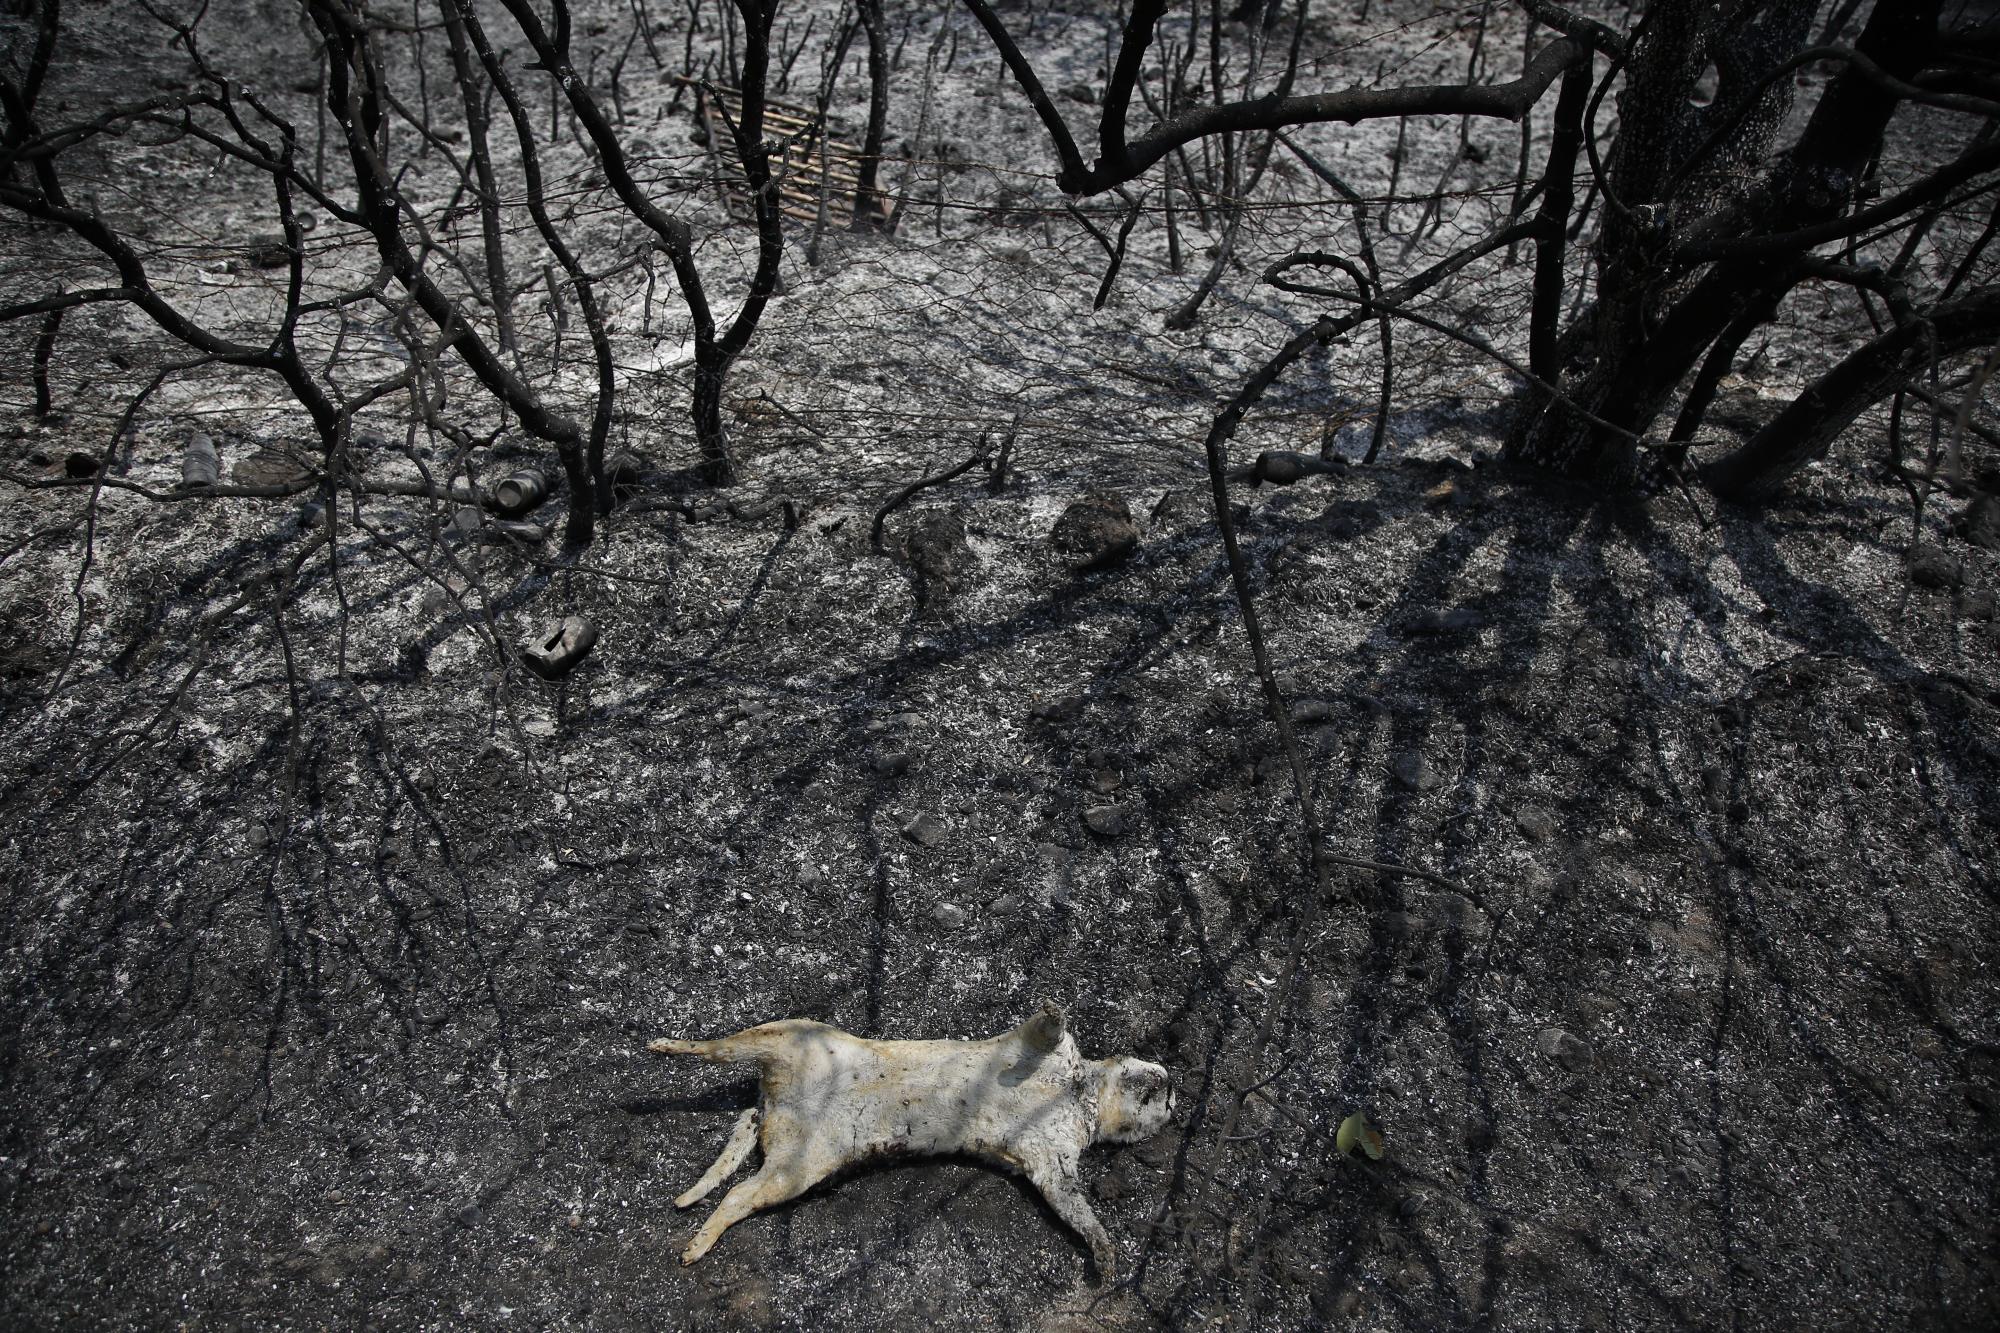 Un animal yace muerto después de un incendio forestal en el área de Varibobi, en el norte de Atenas, el jueves 5 de agosto de 2021. (Foto AP / Lefteris Pitarakis)